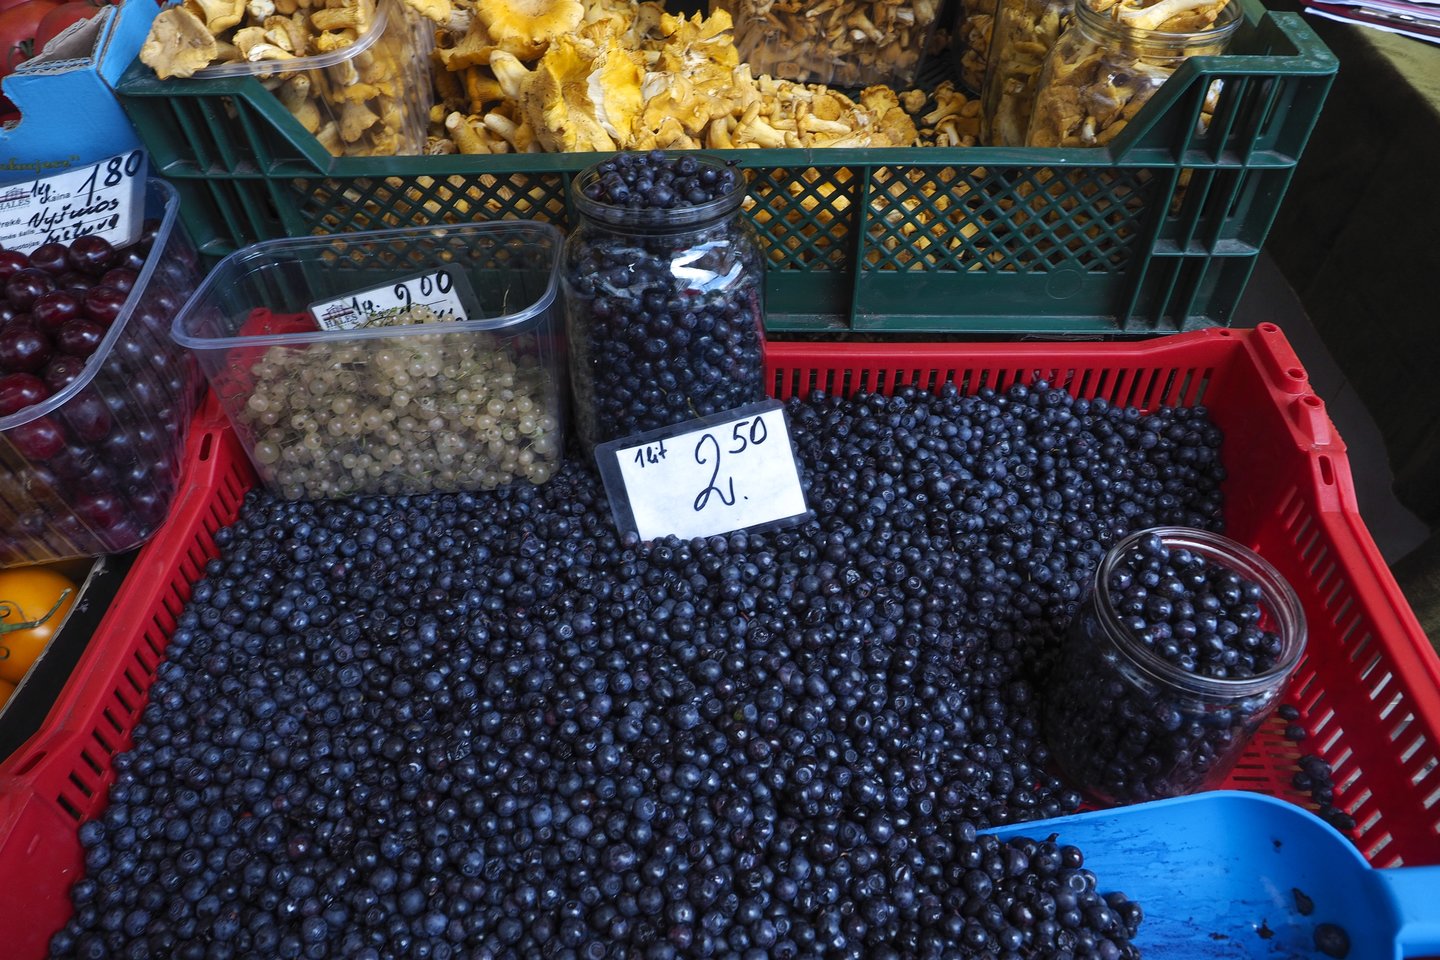  Žmones stebinusios pirmųjų šiais metais grybų kainos atslūgo ir dabar mėlynių ar voveruškų litras vidutiniškai parduodamas už 3 eurus.<br>V.Ščiavinsko nuotr.